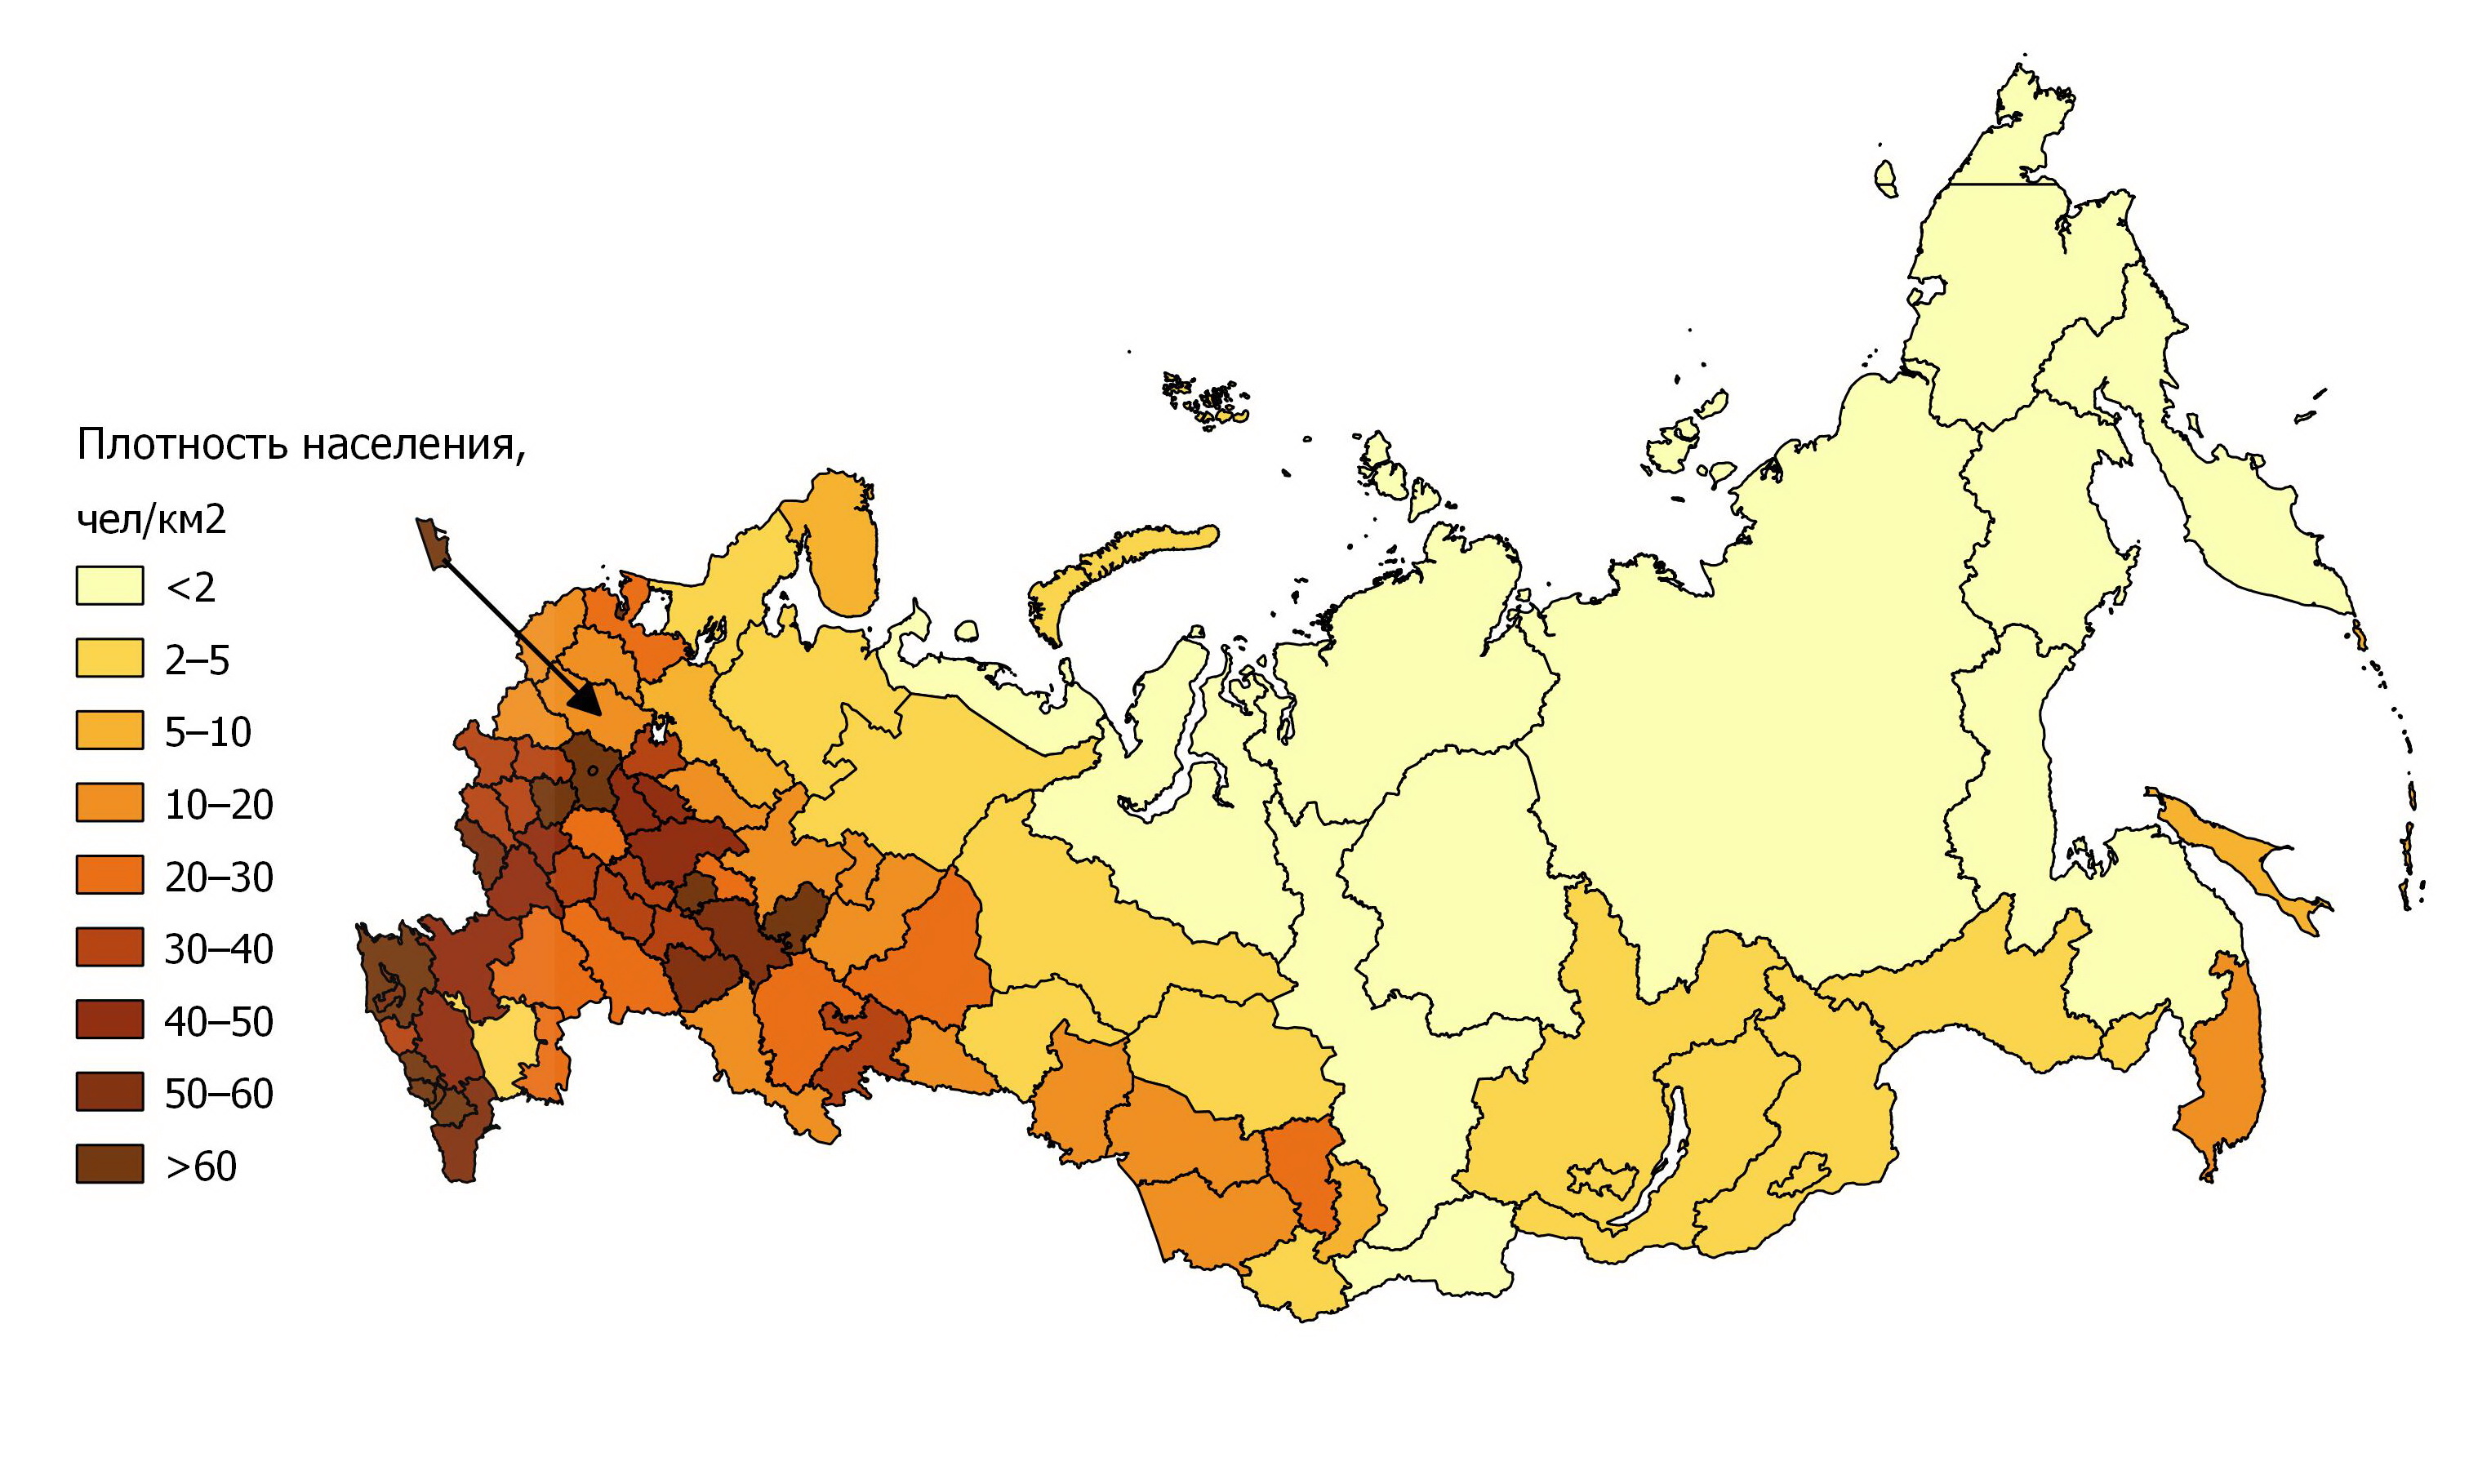 Самый маленький субъект рф по населению. Карта плотности населения России по регионам 2020. Карта плотности населения России 2021. Карта плотности населения России по субъектам. Карта средней плотности населения России.